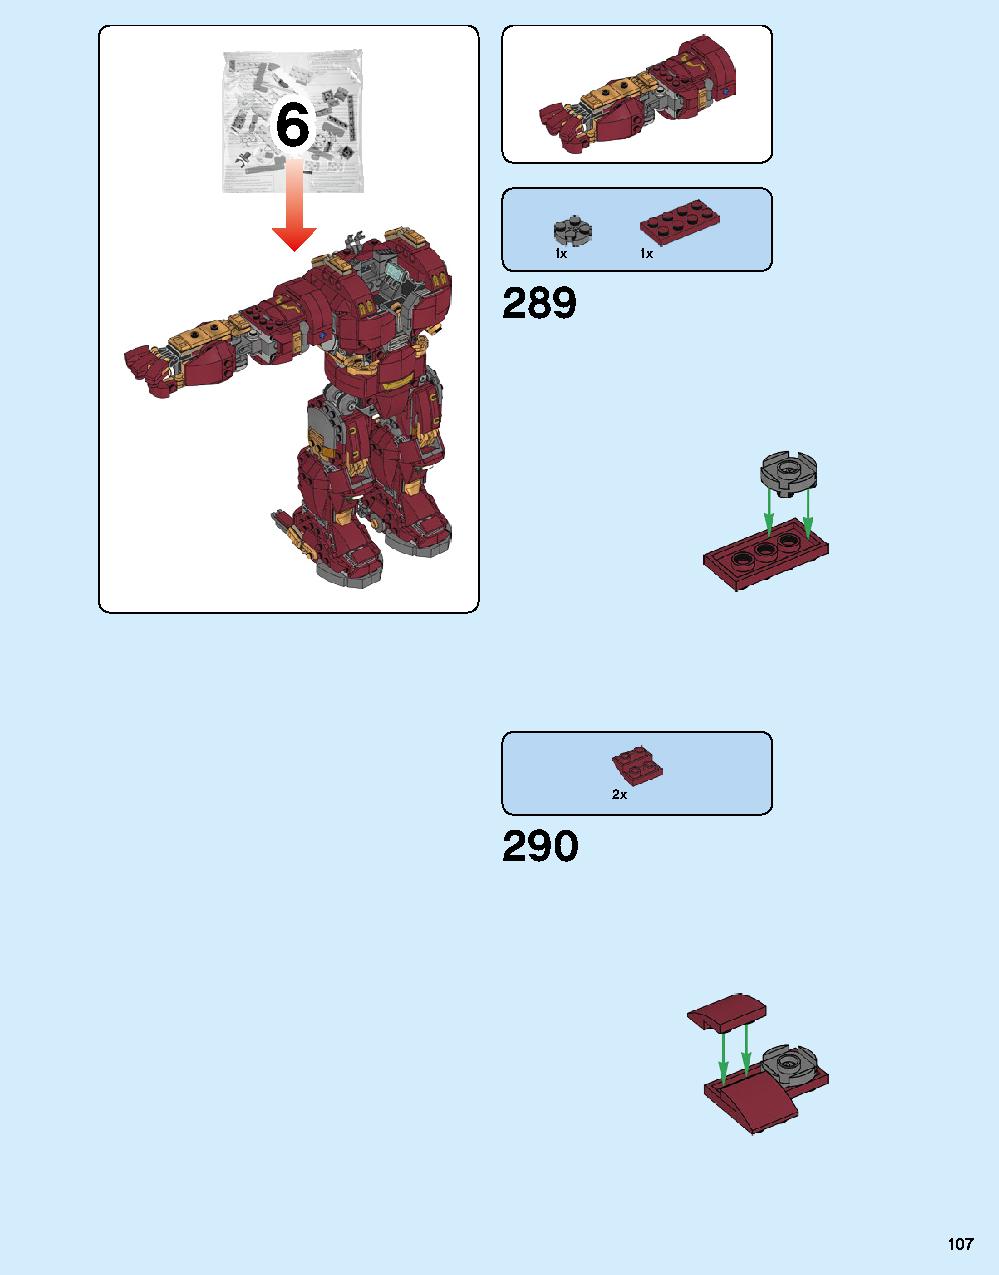 ハルクバスター：ウルトロン・エディション 76105 レゴの商品情報 レゴの説明書・組立方法 107 page